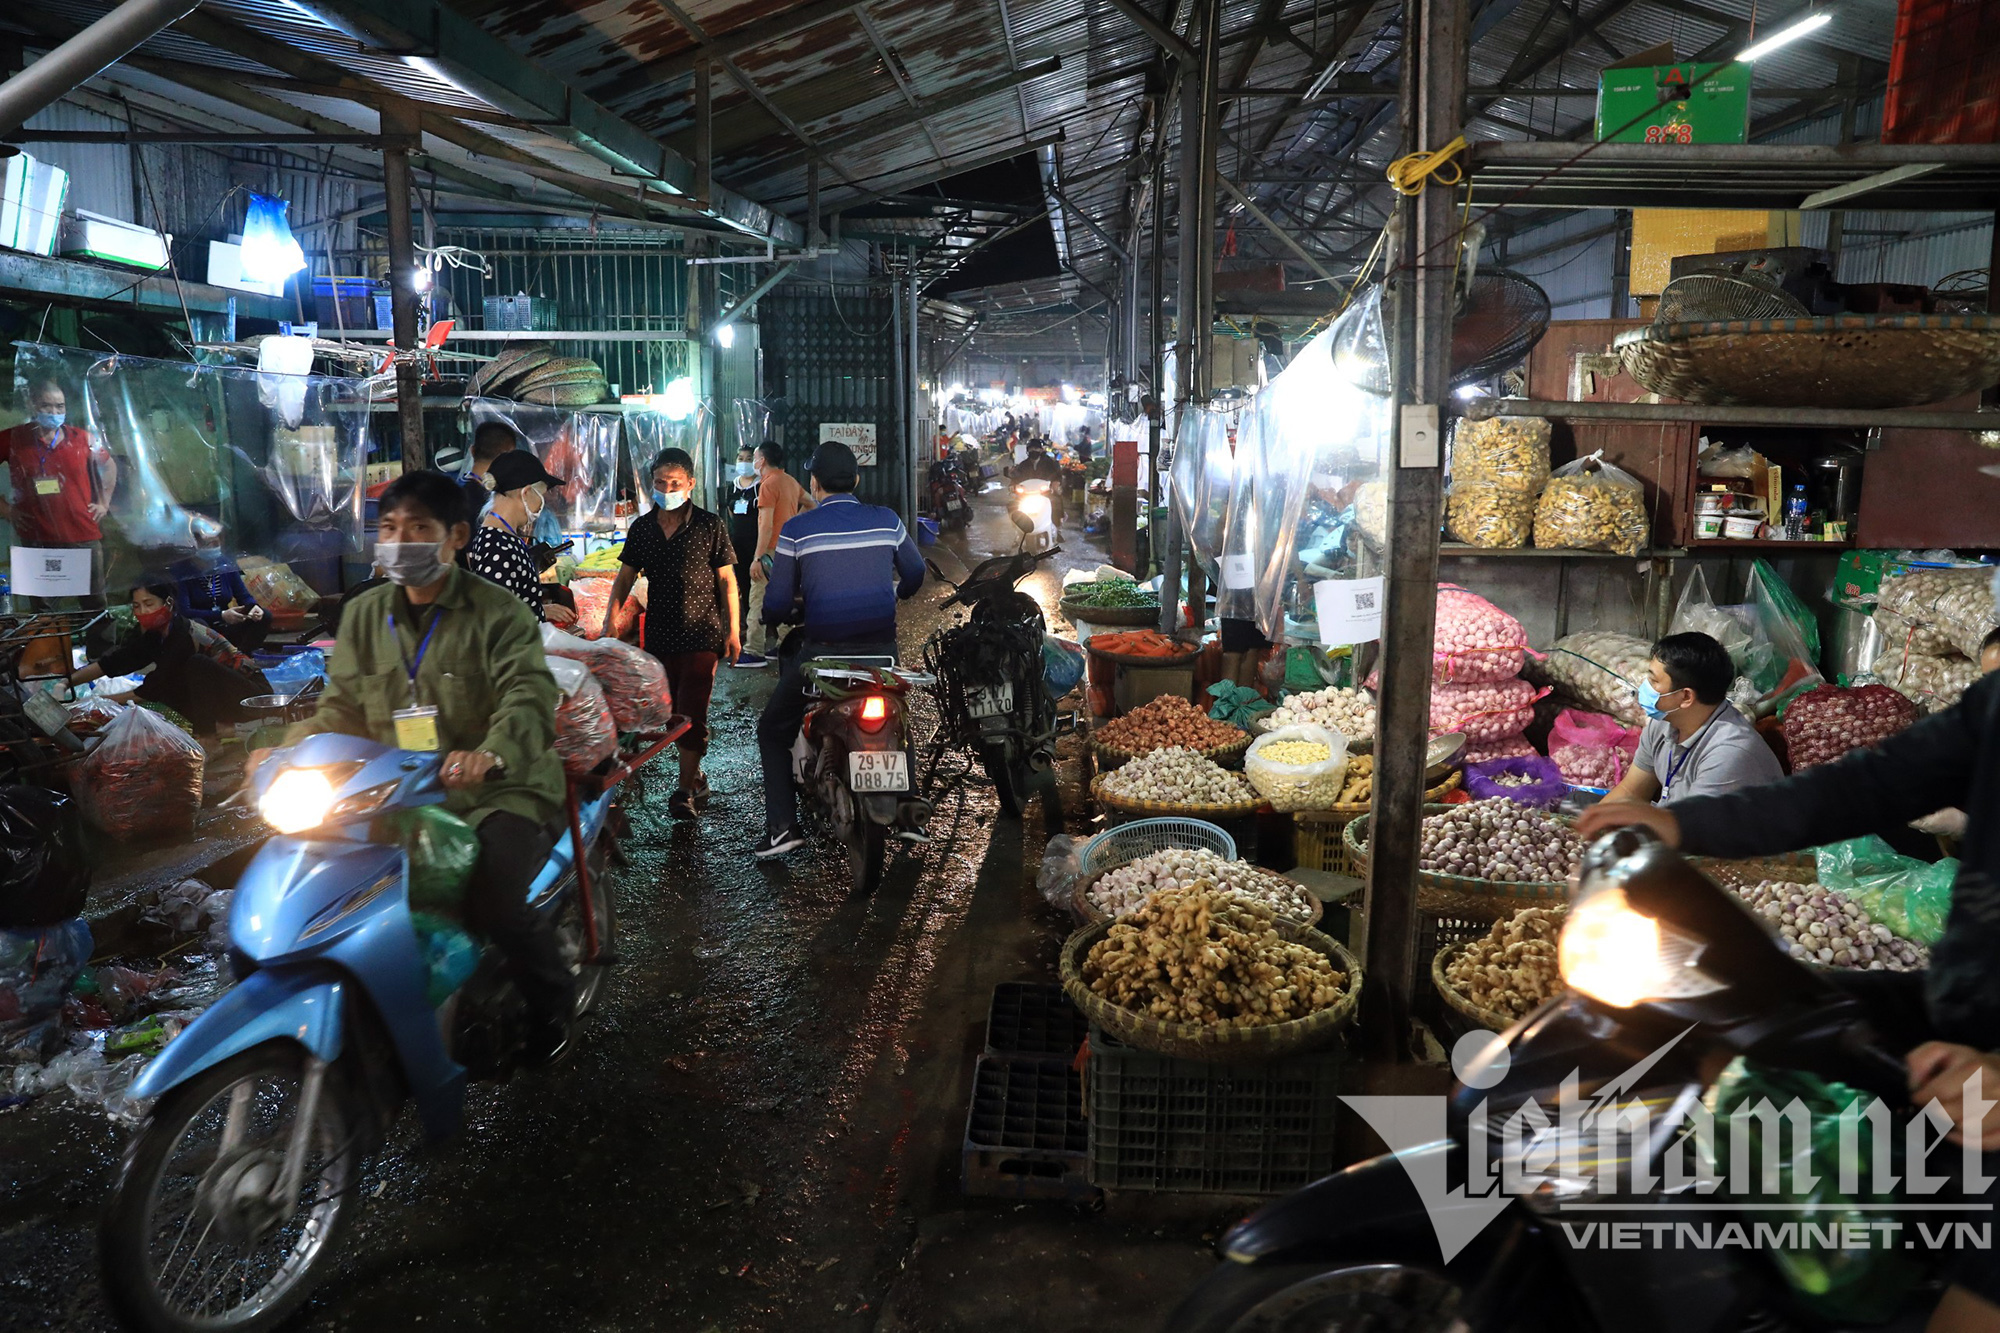 Chợ đầu mối nổi tiếng nhất Hà Nội mở lại sau hai tháng đóng cửa - Ảnh 11.